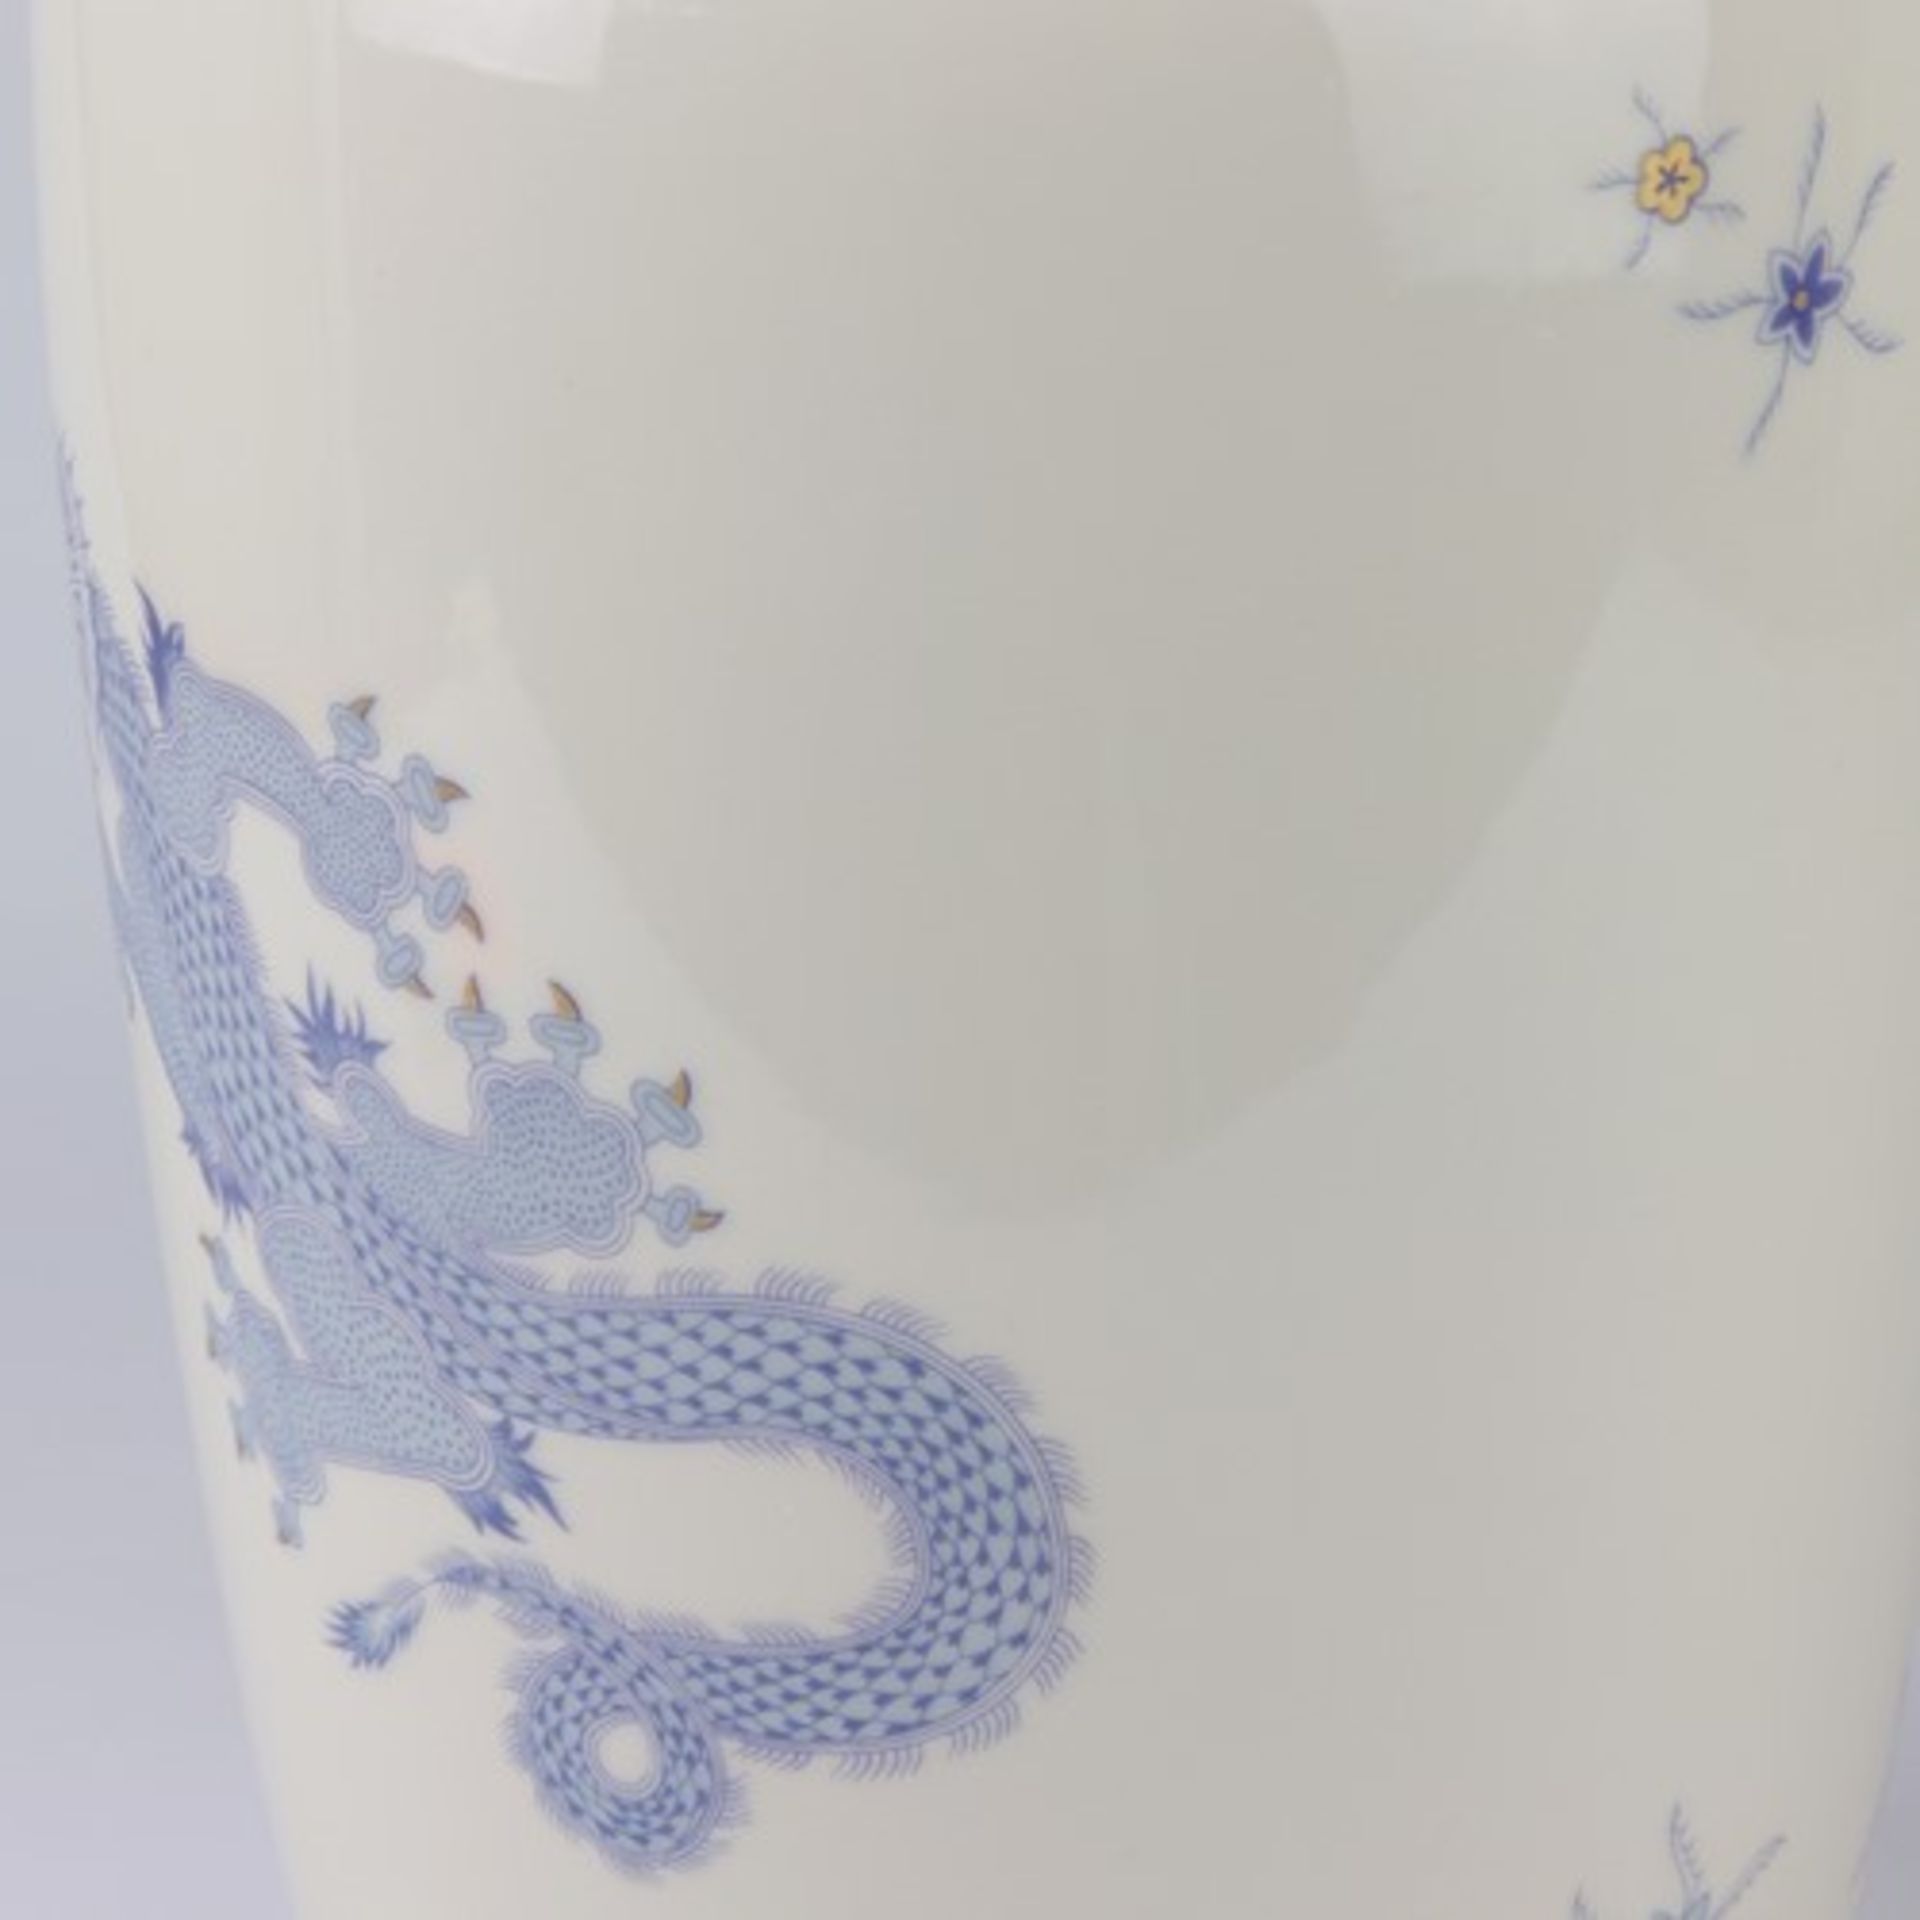 Lichte - Vasegrüne Marke, Balusterform, Vorder u. Rückseite m. stilisierten Drachen in Blau- u. - Bild 4 aus 5